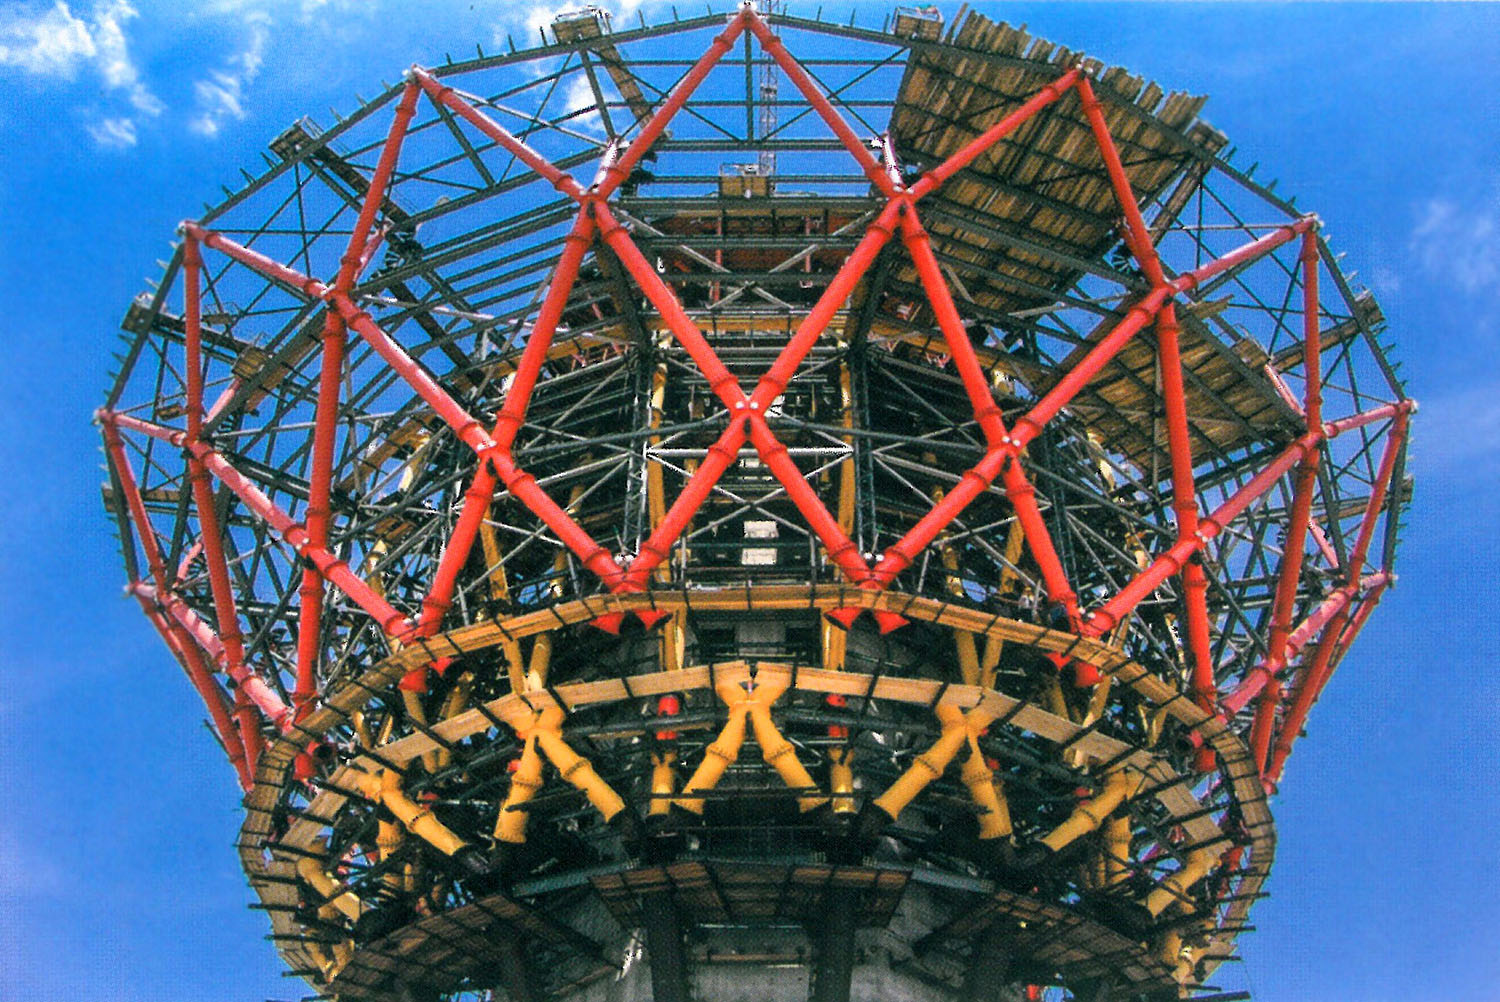 Assembled structural basket